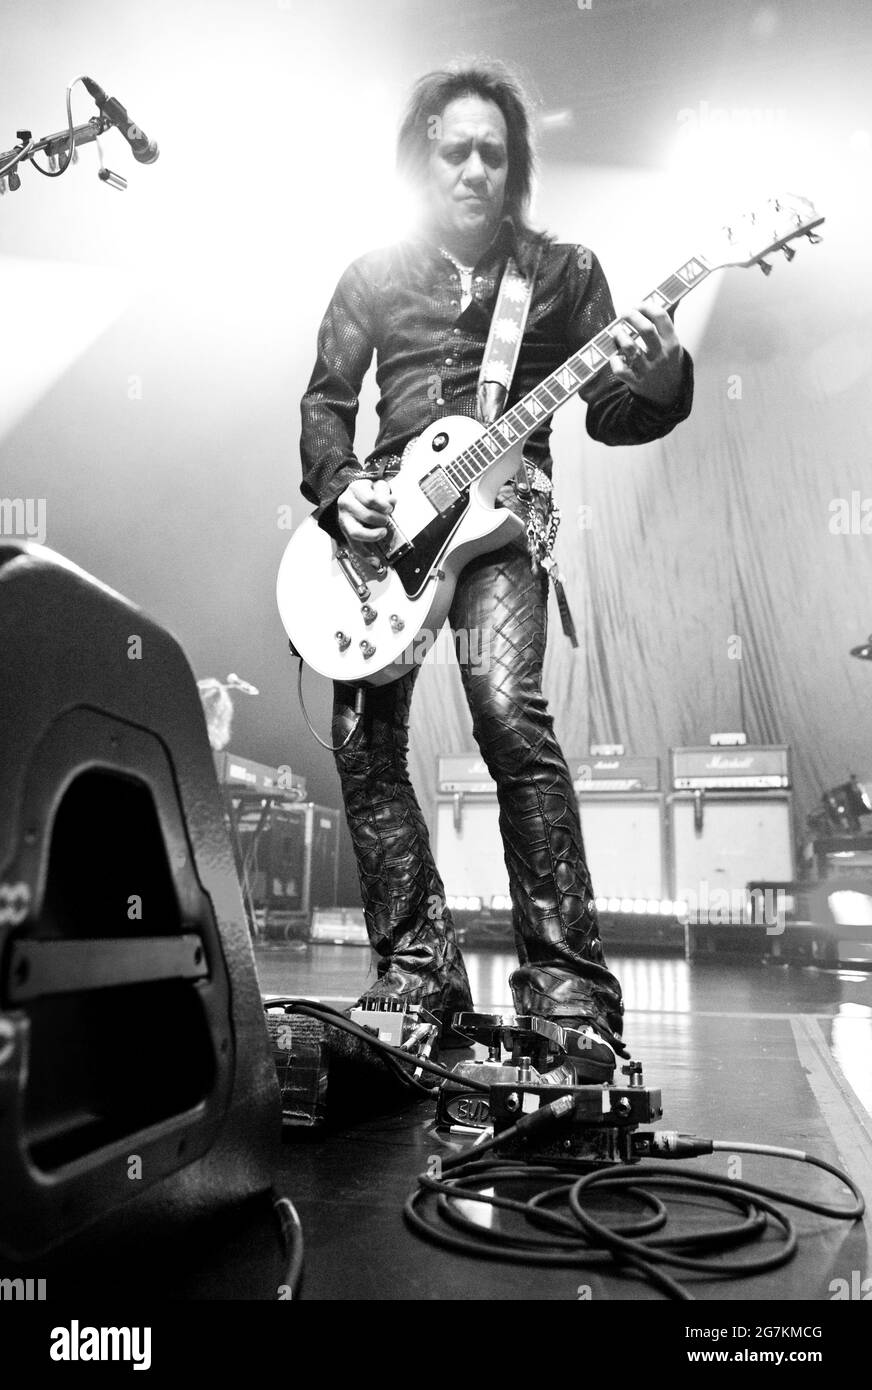 Gitarrist Jeff LaBar von der Haarmetalband Cinderella spielt live am Veranstaltungsort im Horseshoe Casino in Hammond, Indiana, USA. Juli 2010. Am 15. Juli 2021 wurde bekannt gegeben, dass der legendäre Musiker, der für seine explosive und energische Bühnenpräsenz bekannt ist, an unbekannten Ursachen verstorben ist. Stockfoto